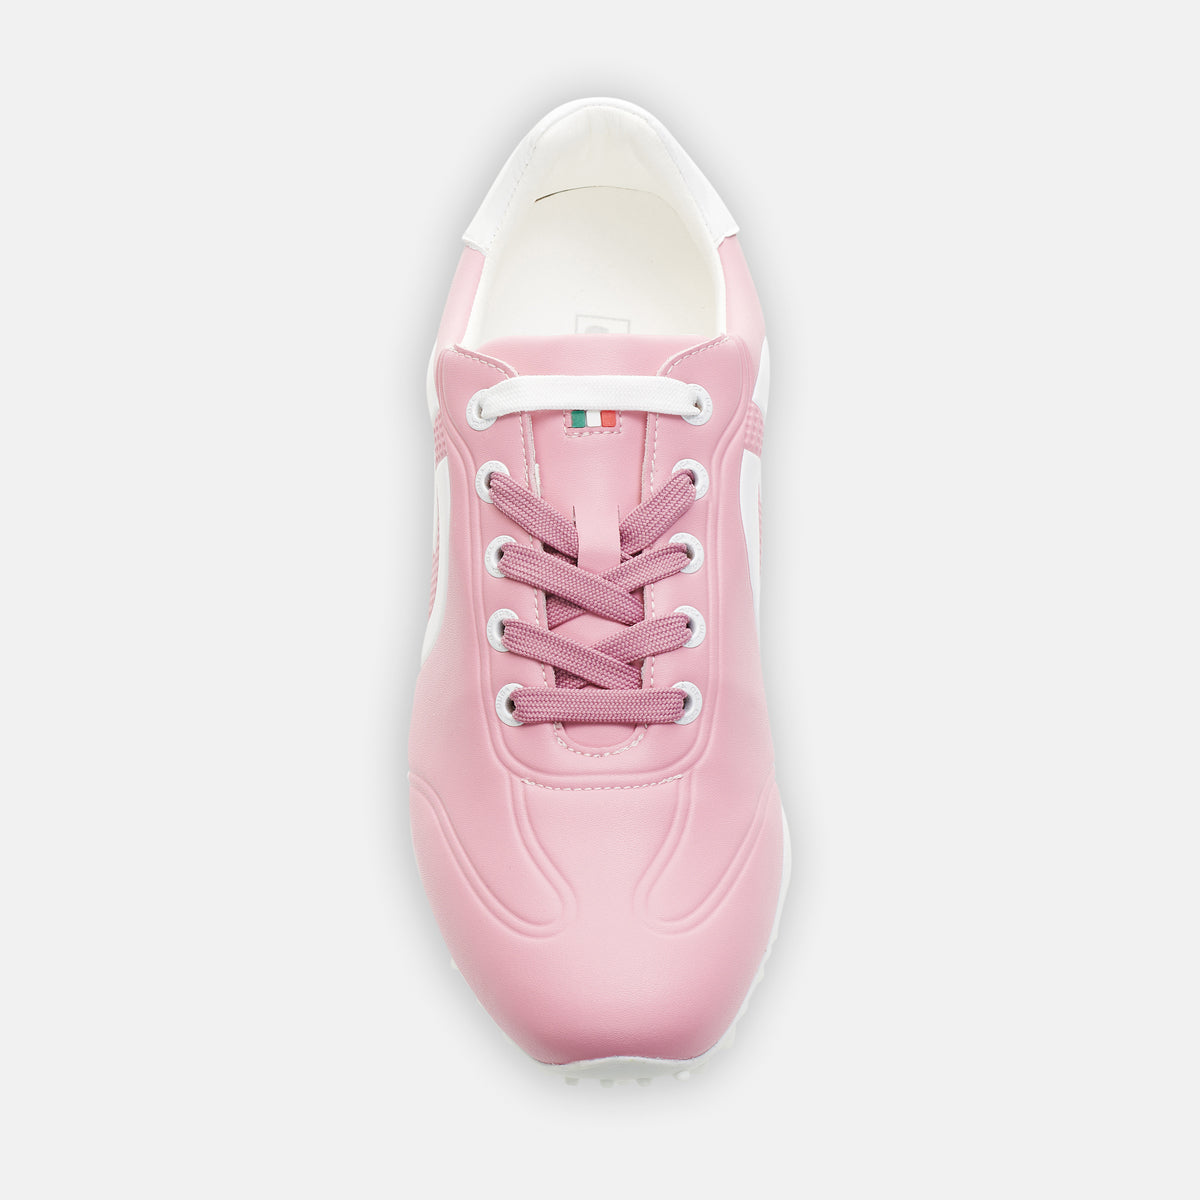 spikeless golf shoes women